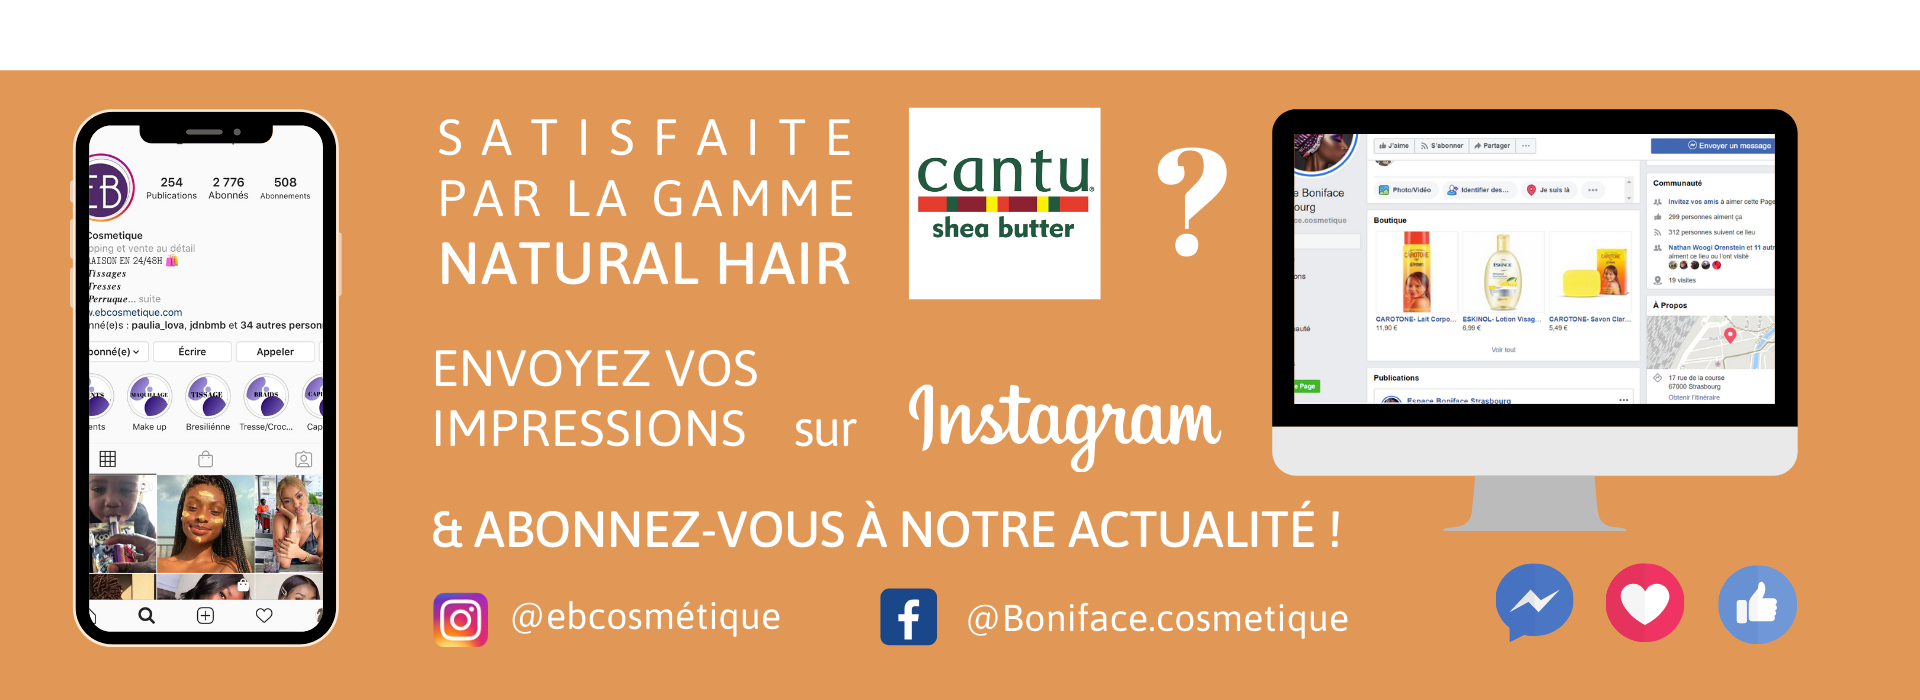 fiche produit ebcosmetique cantu ARGAN OIL natural hair leave-in conditioning REPAIR cream facebook instagram